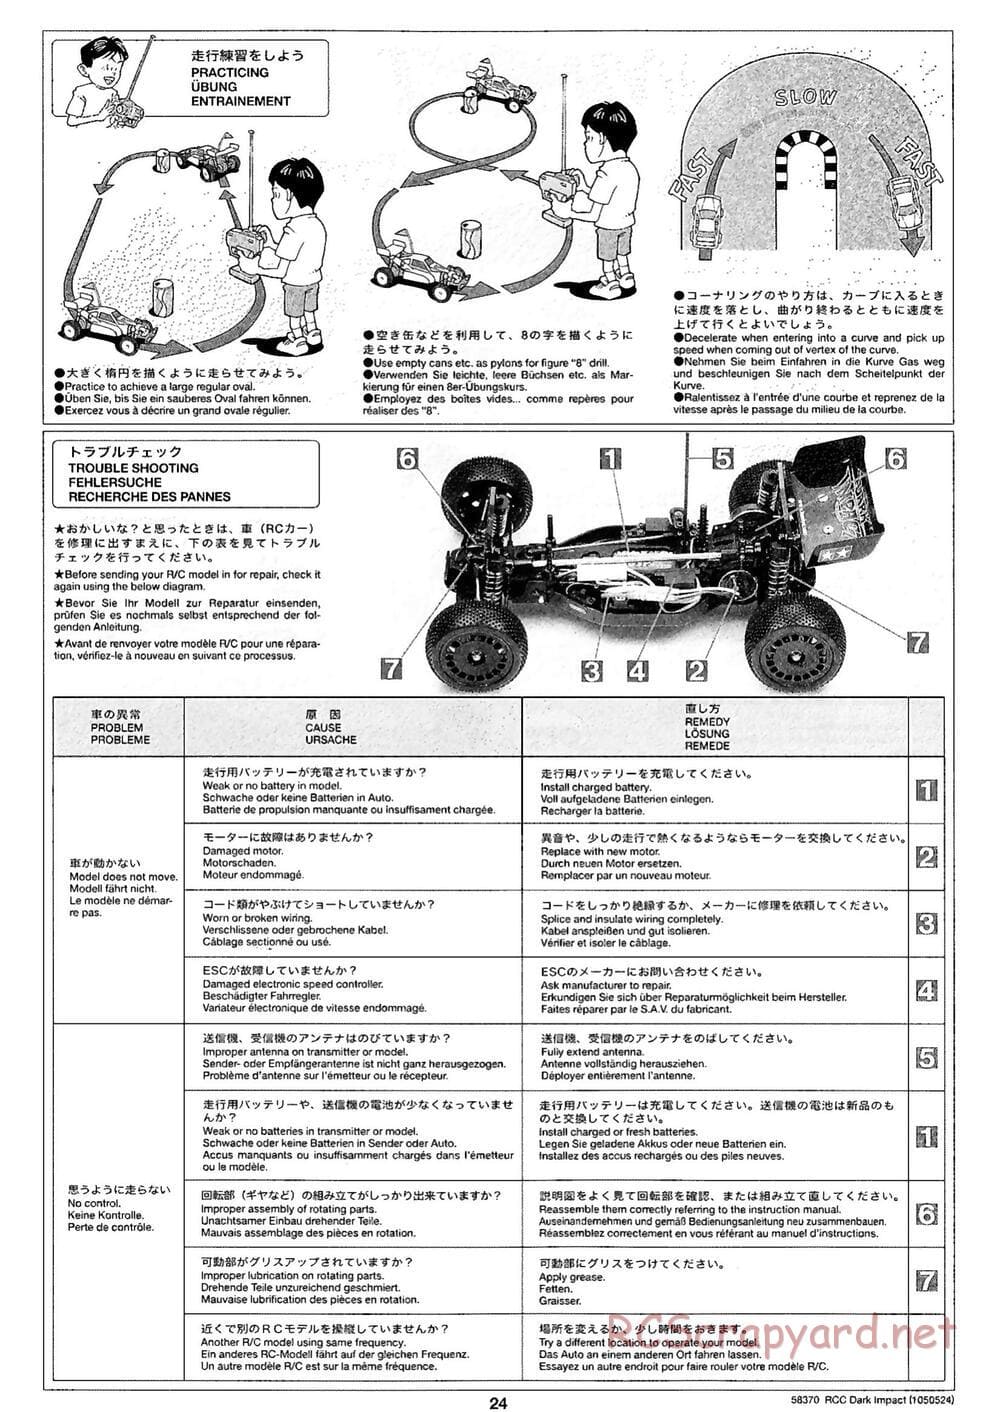 Tamiya - Dark Impact Chassis - Manual - Page 24